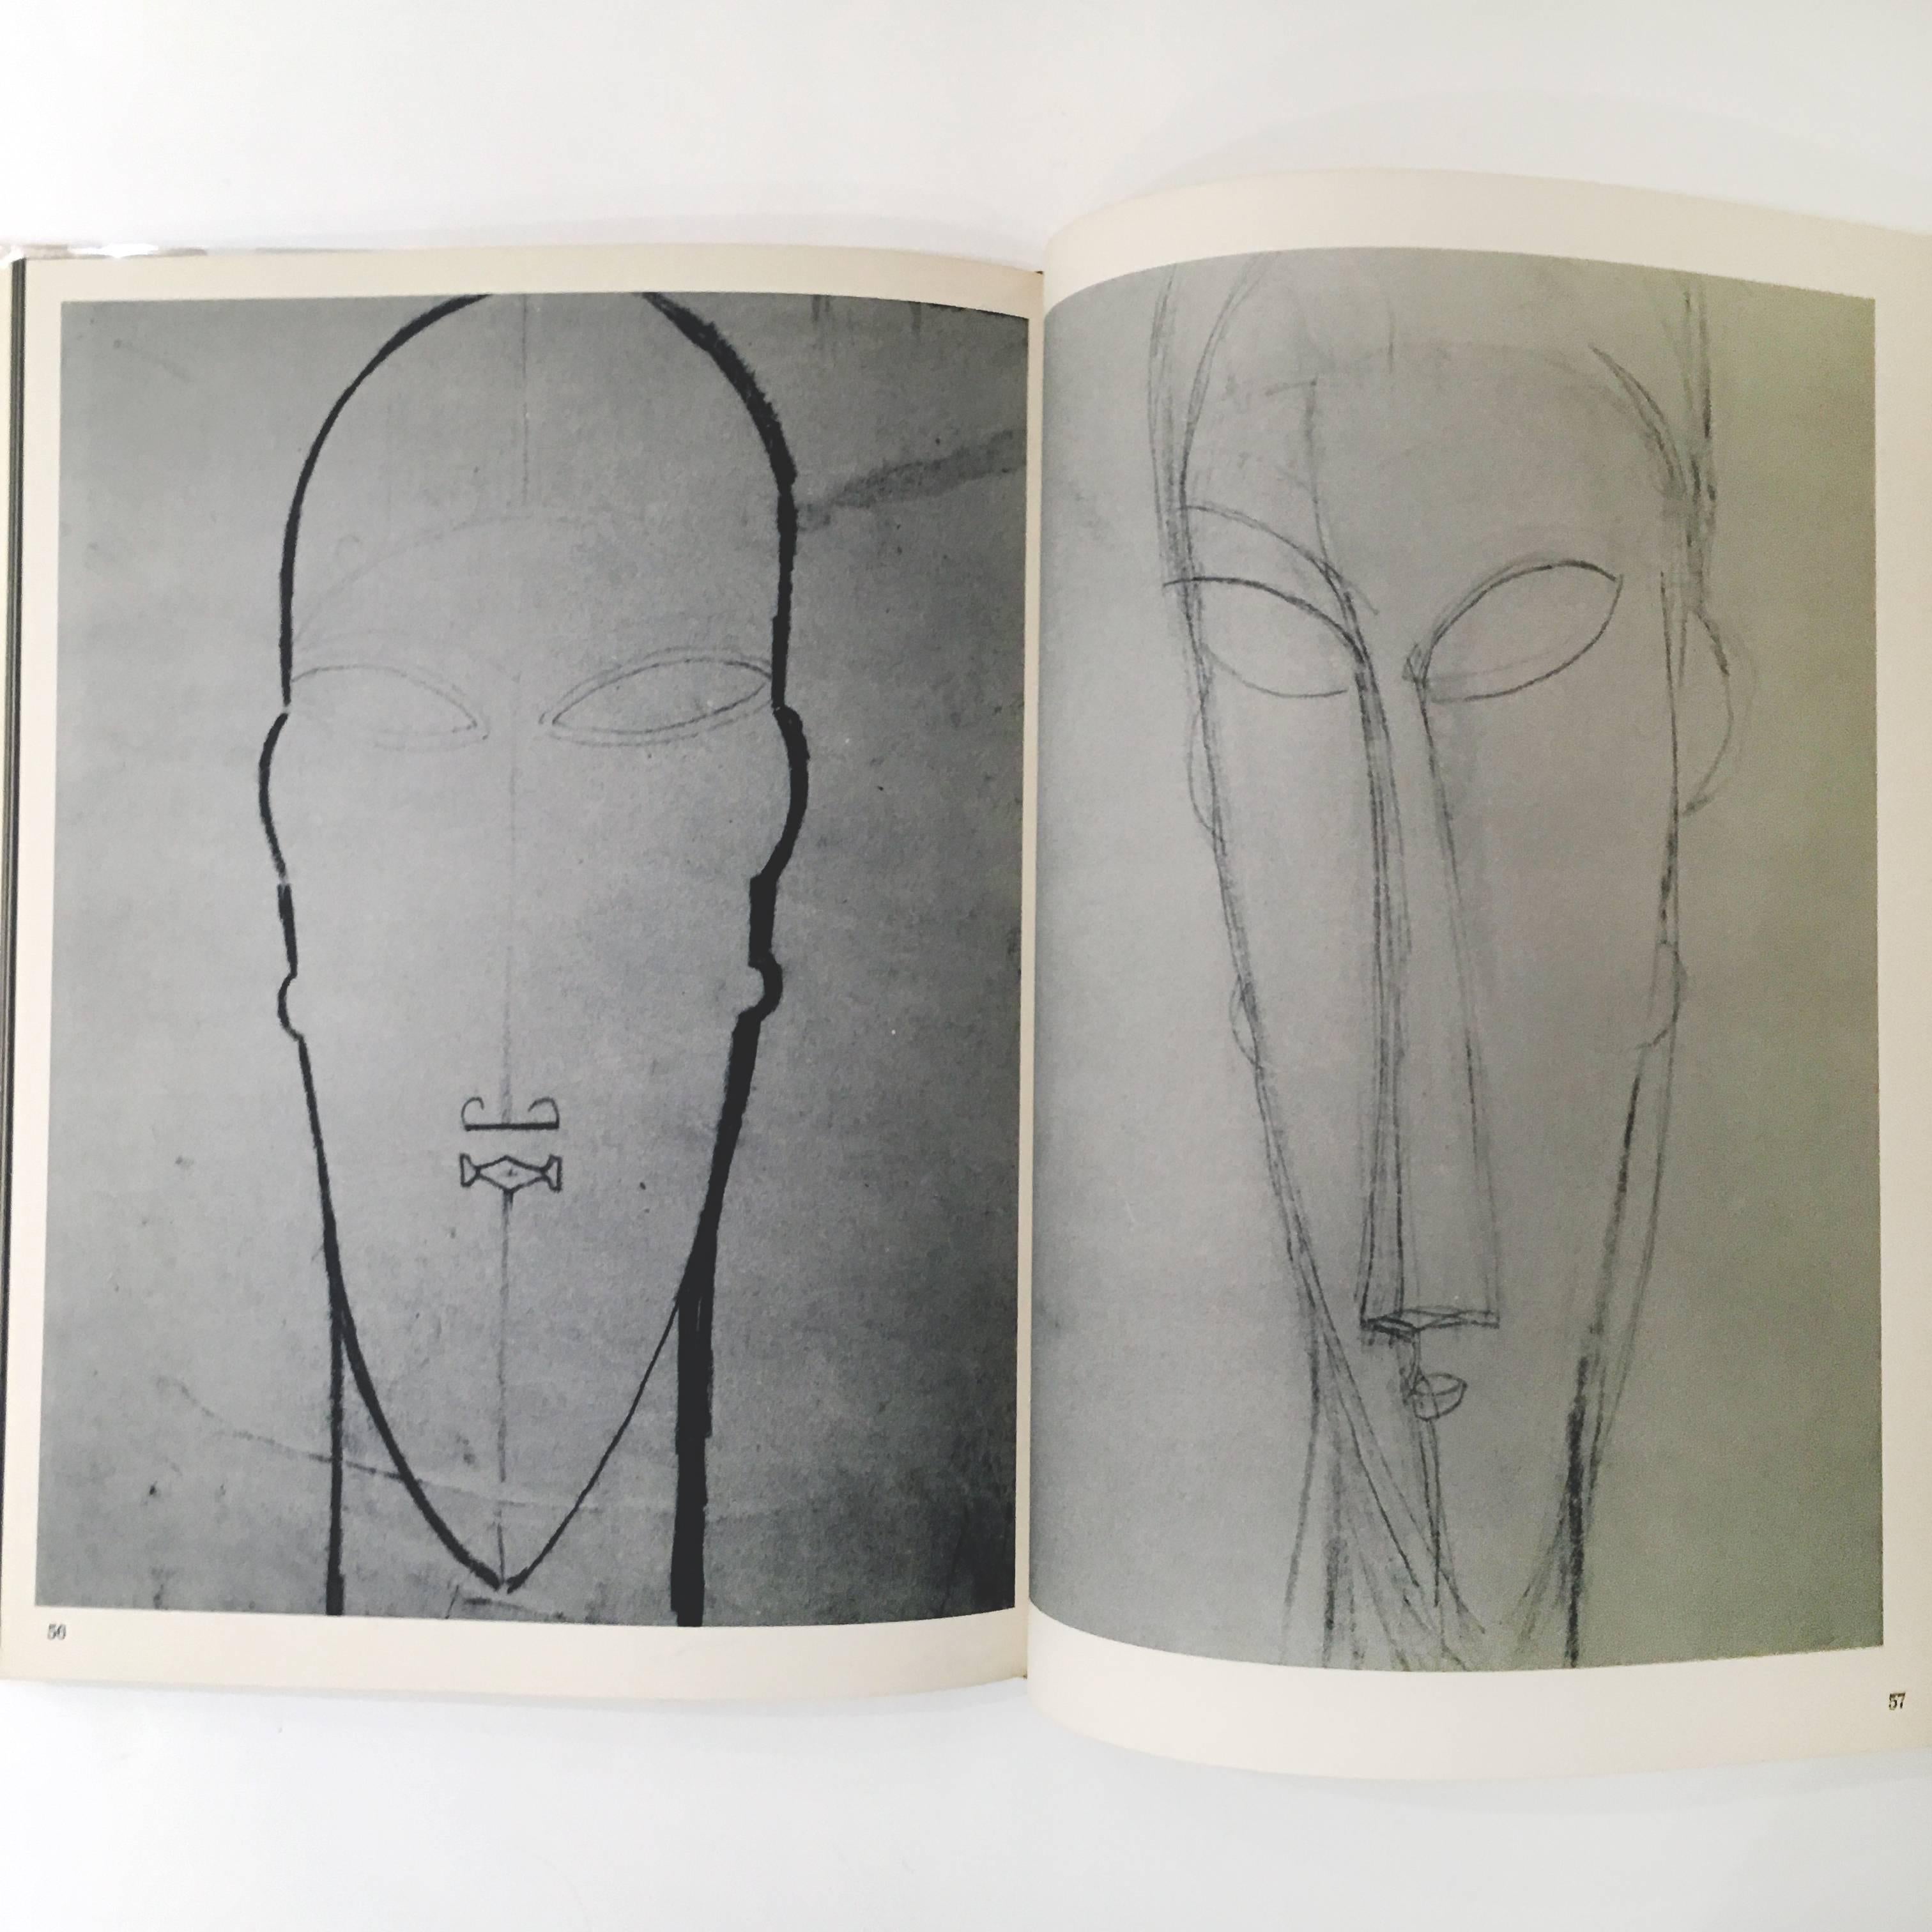 Veröffentlicht von Art, Inc, New York, erste Ausgabe, 1962.

Dies war das erste Buch, das über Modiglianis Skulpturen veröffentlicht wurde. Das Buch ist voll von wunderschön gedruckten Schwarz-Weiß-Bildern von Modiglianis Werken, die aus Museen